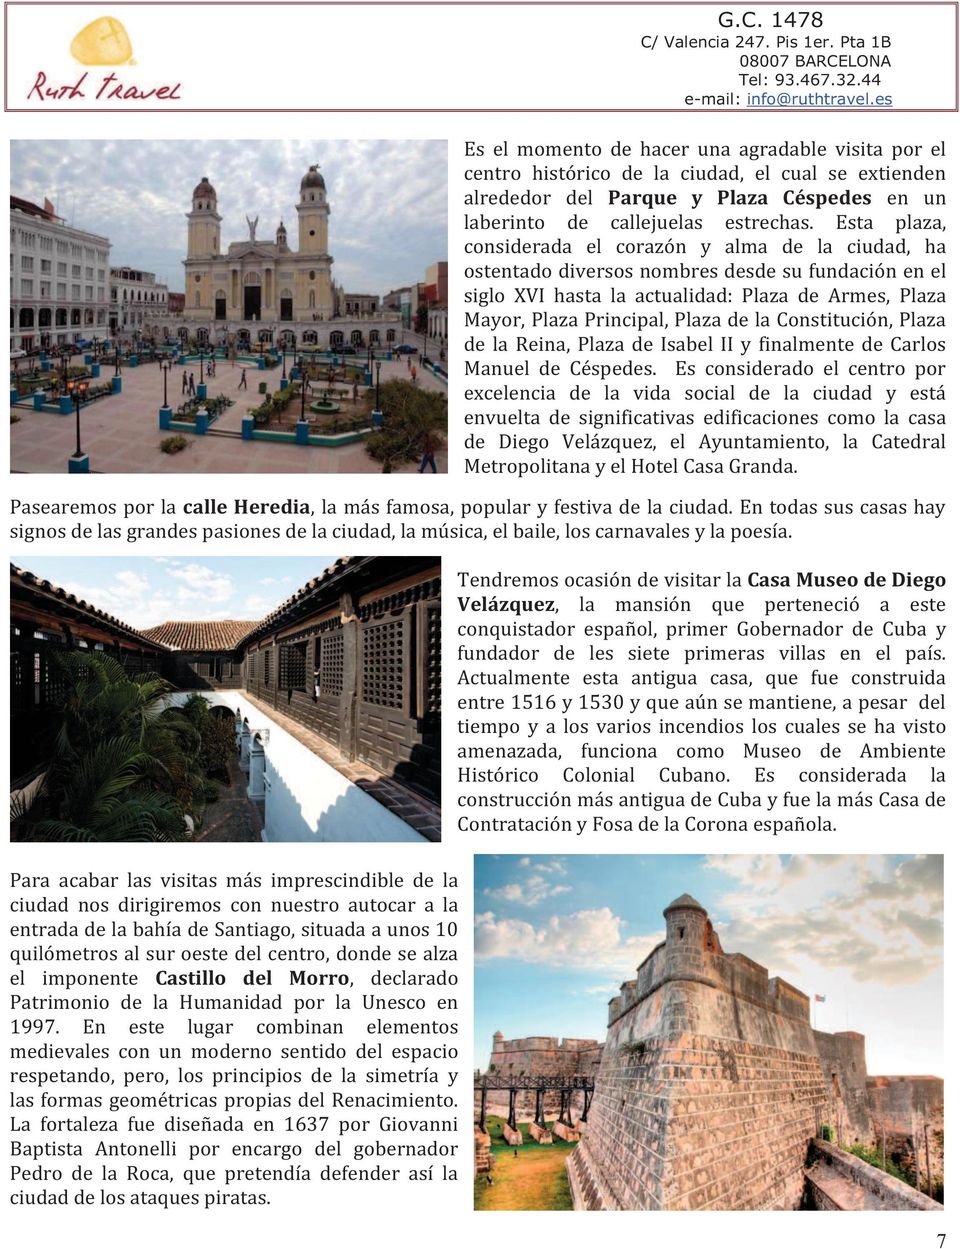 Constitución, Plaza de la Reina, Plaza de Isabel II y finalmente de Carlos Manuel de Céspedes.